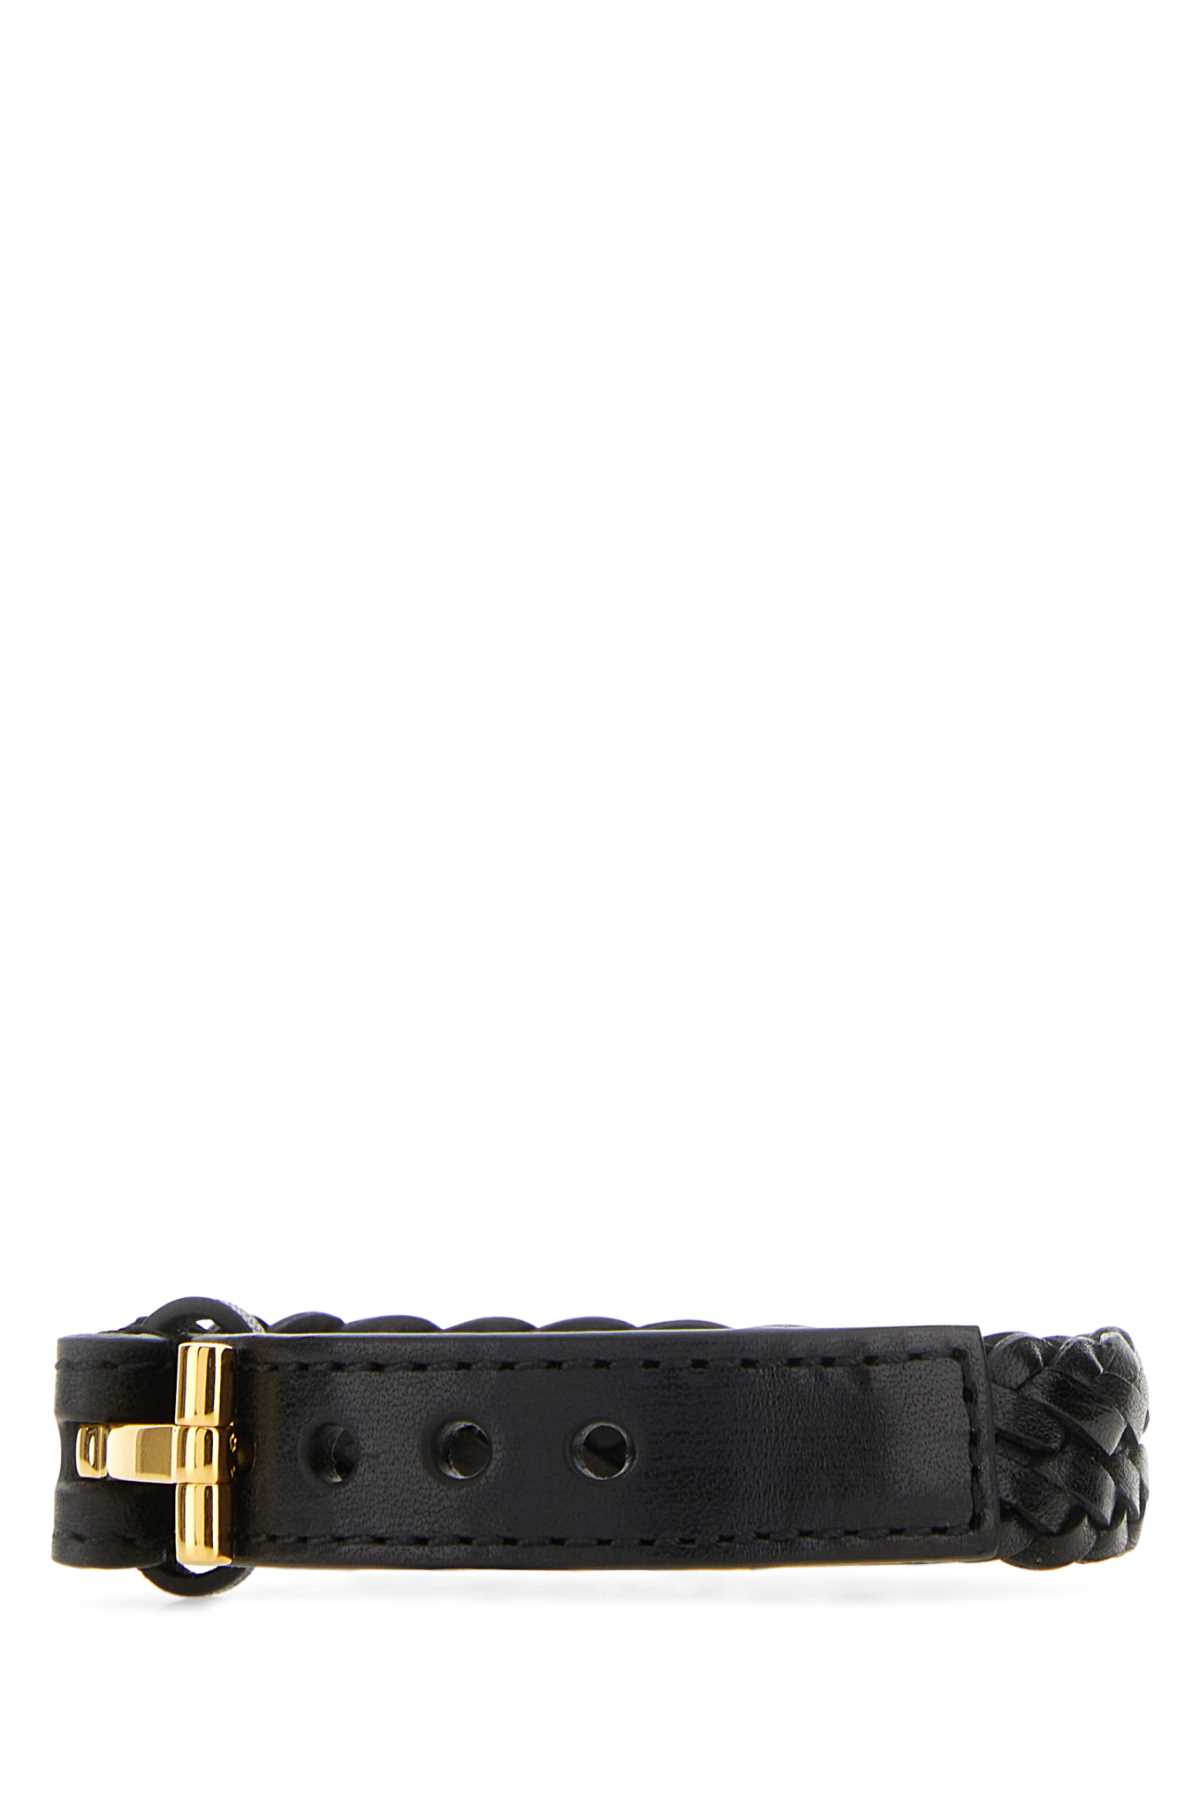 Tom Ford Black Leather Bracelet